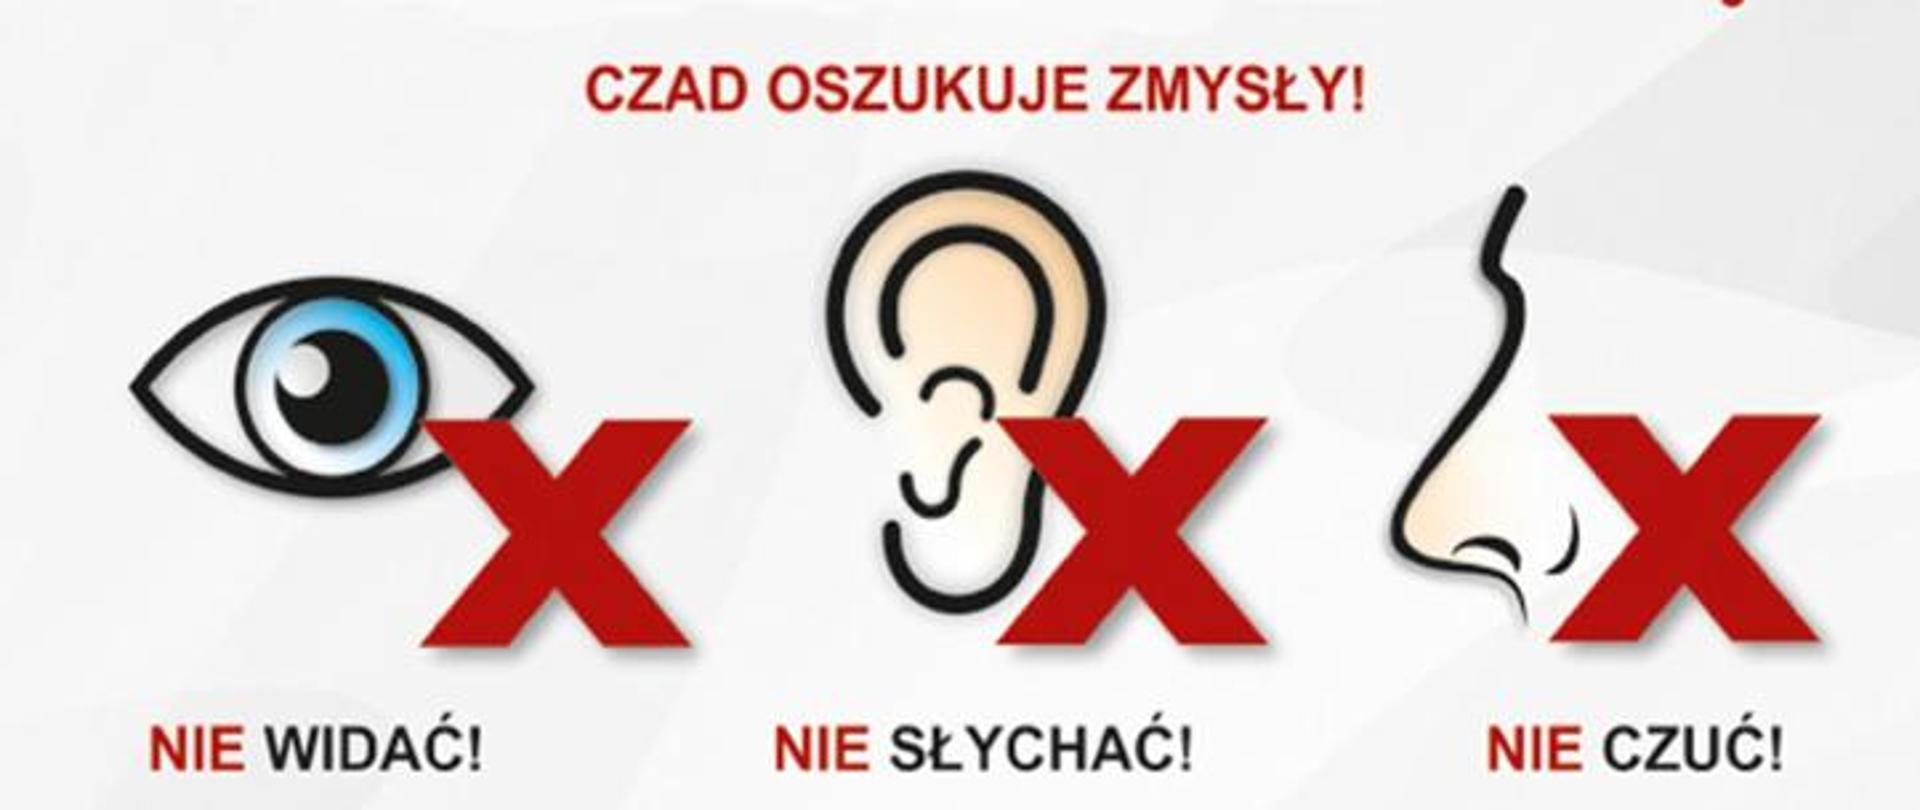 Na plakacie znajduje się napis "Czad oszukuje zmysły" oraz oko, ucho, nos, przy których są czerwone "X" Jest również opis: nie widać, nie słychać, nie czuć.